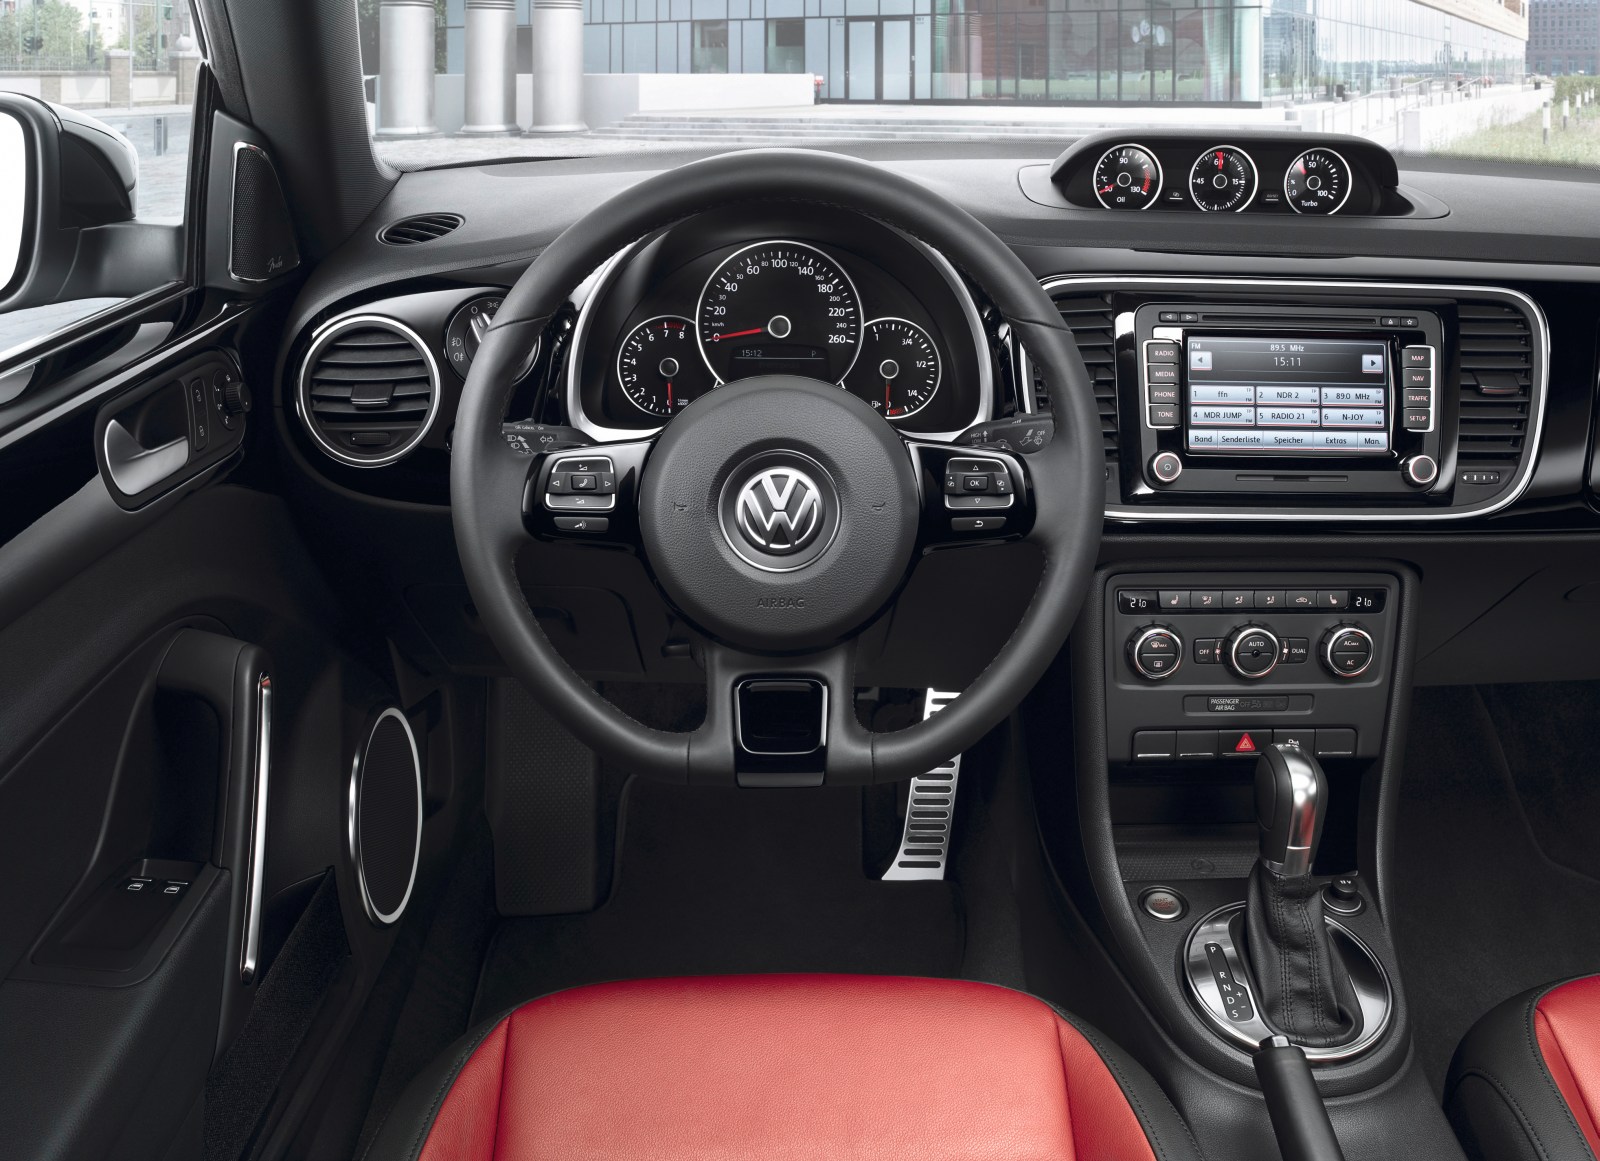 Nuovo Volkswagen Maggiolino: scheda tecnica